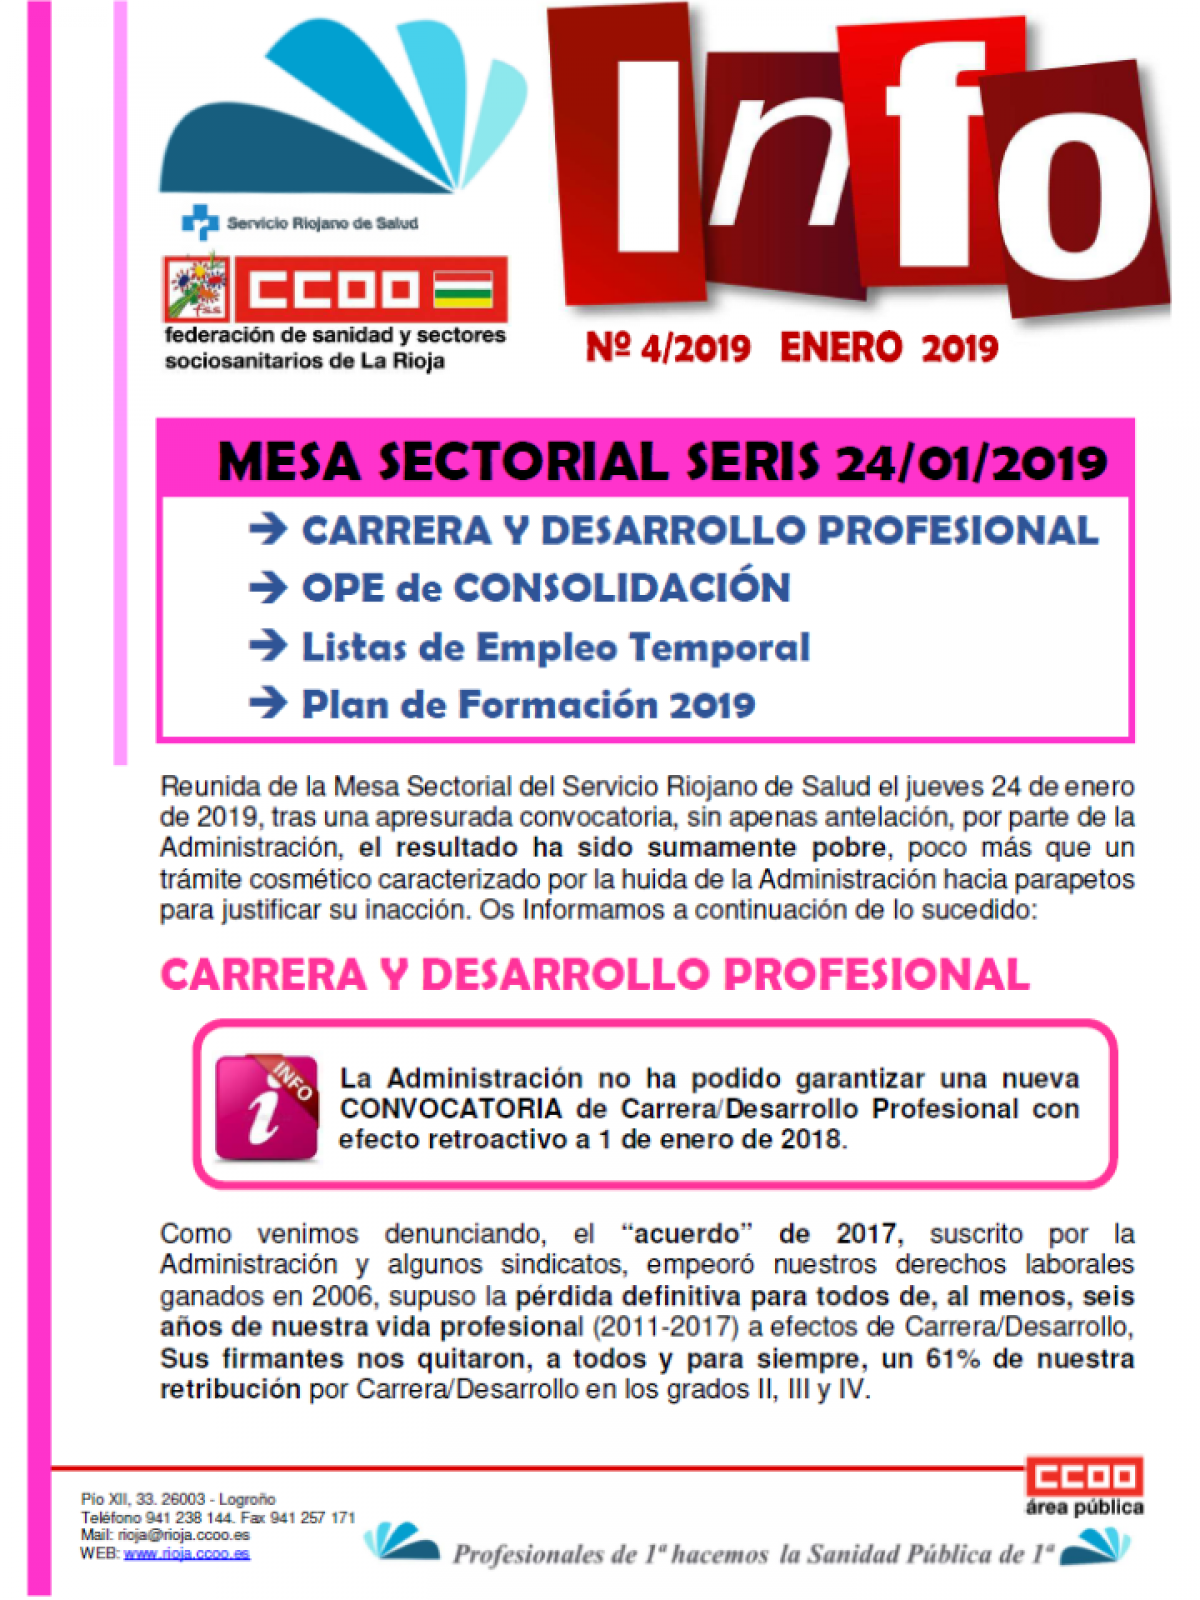 FSS-CCOO INFO__Mesa Sectorial SERIS__24 ENERO 2019